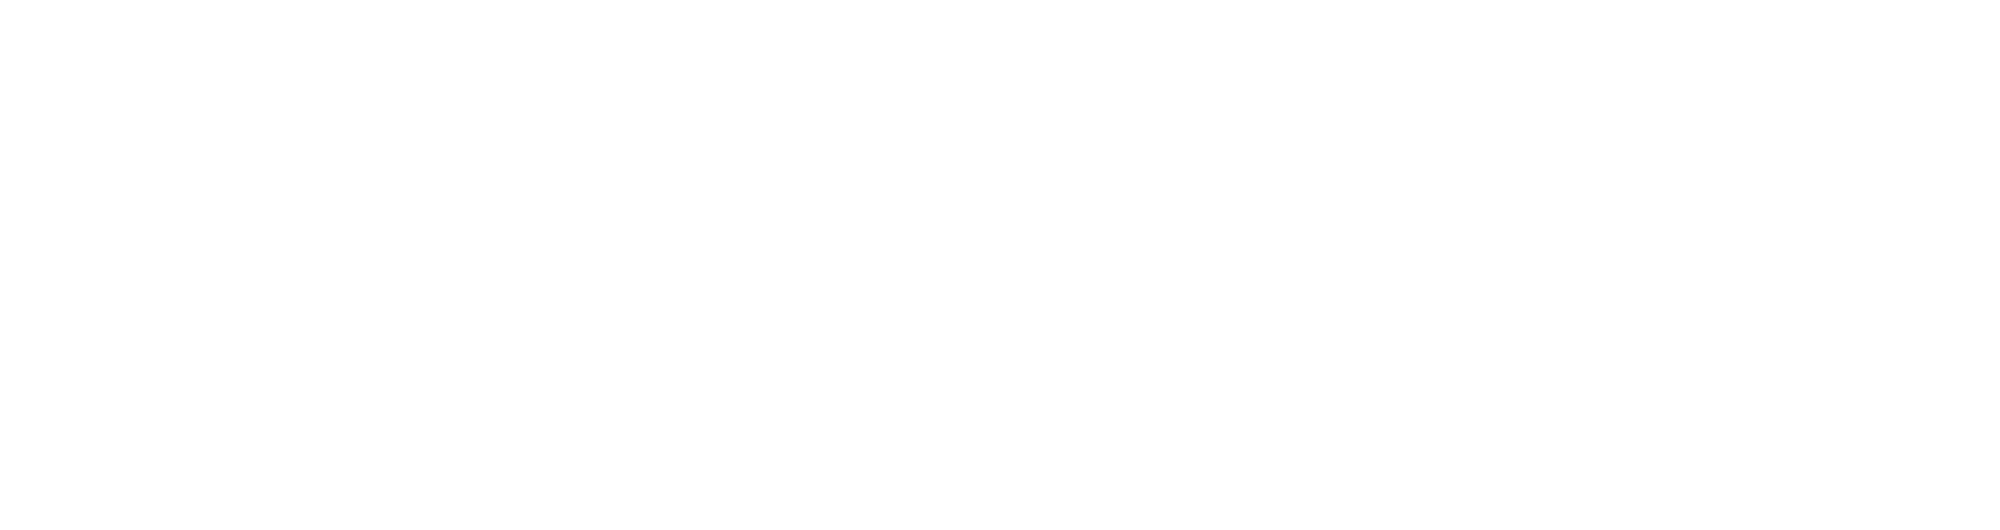 Electric Bike Planet